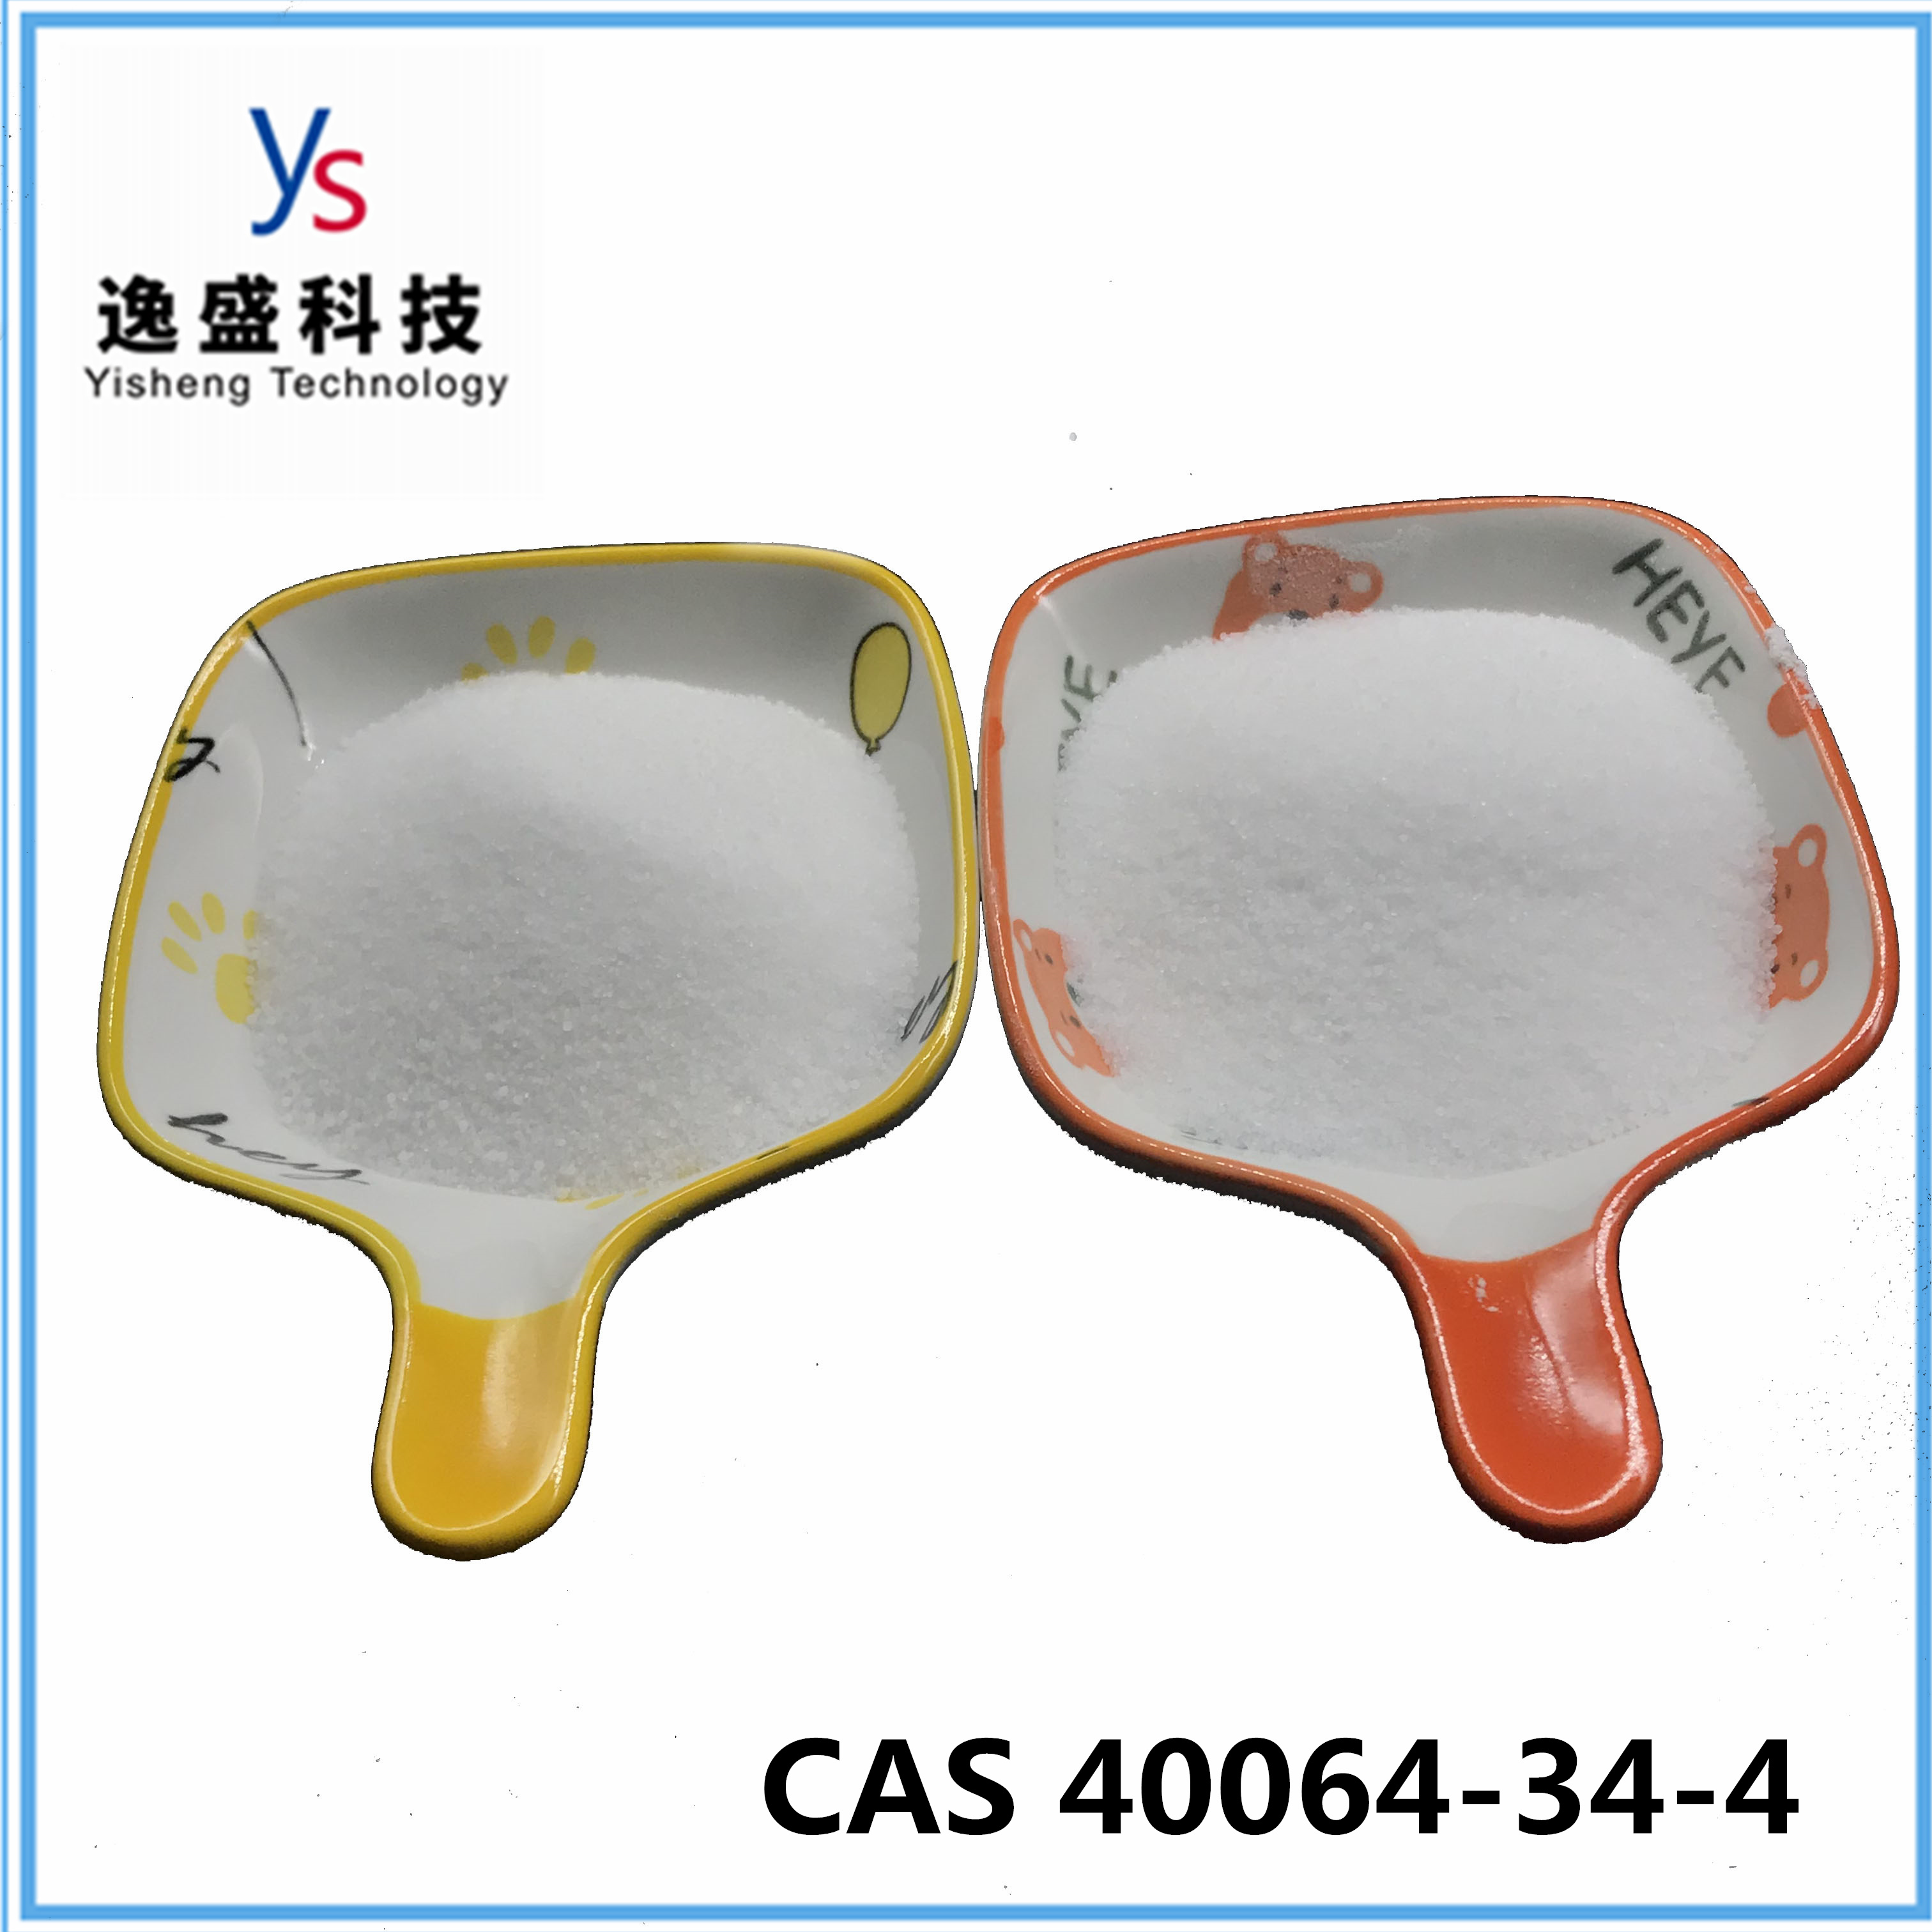  CAS 40064-34-4 Adult Health Powder